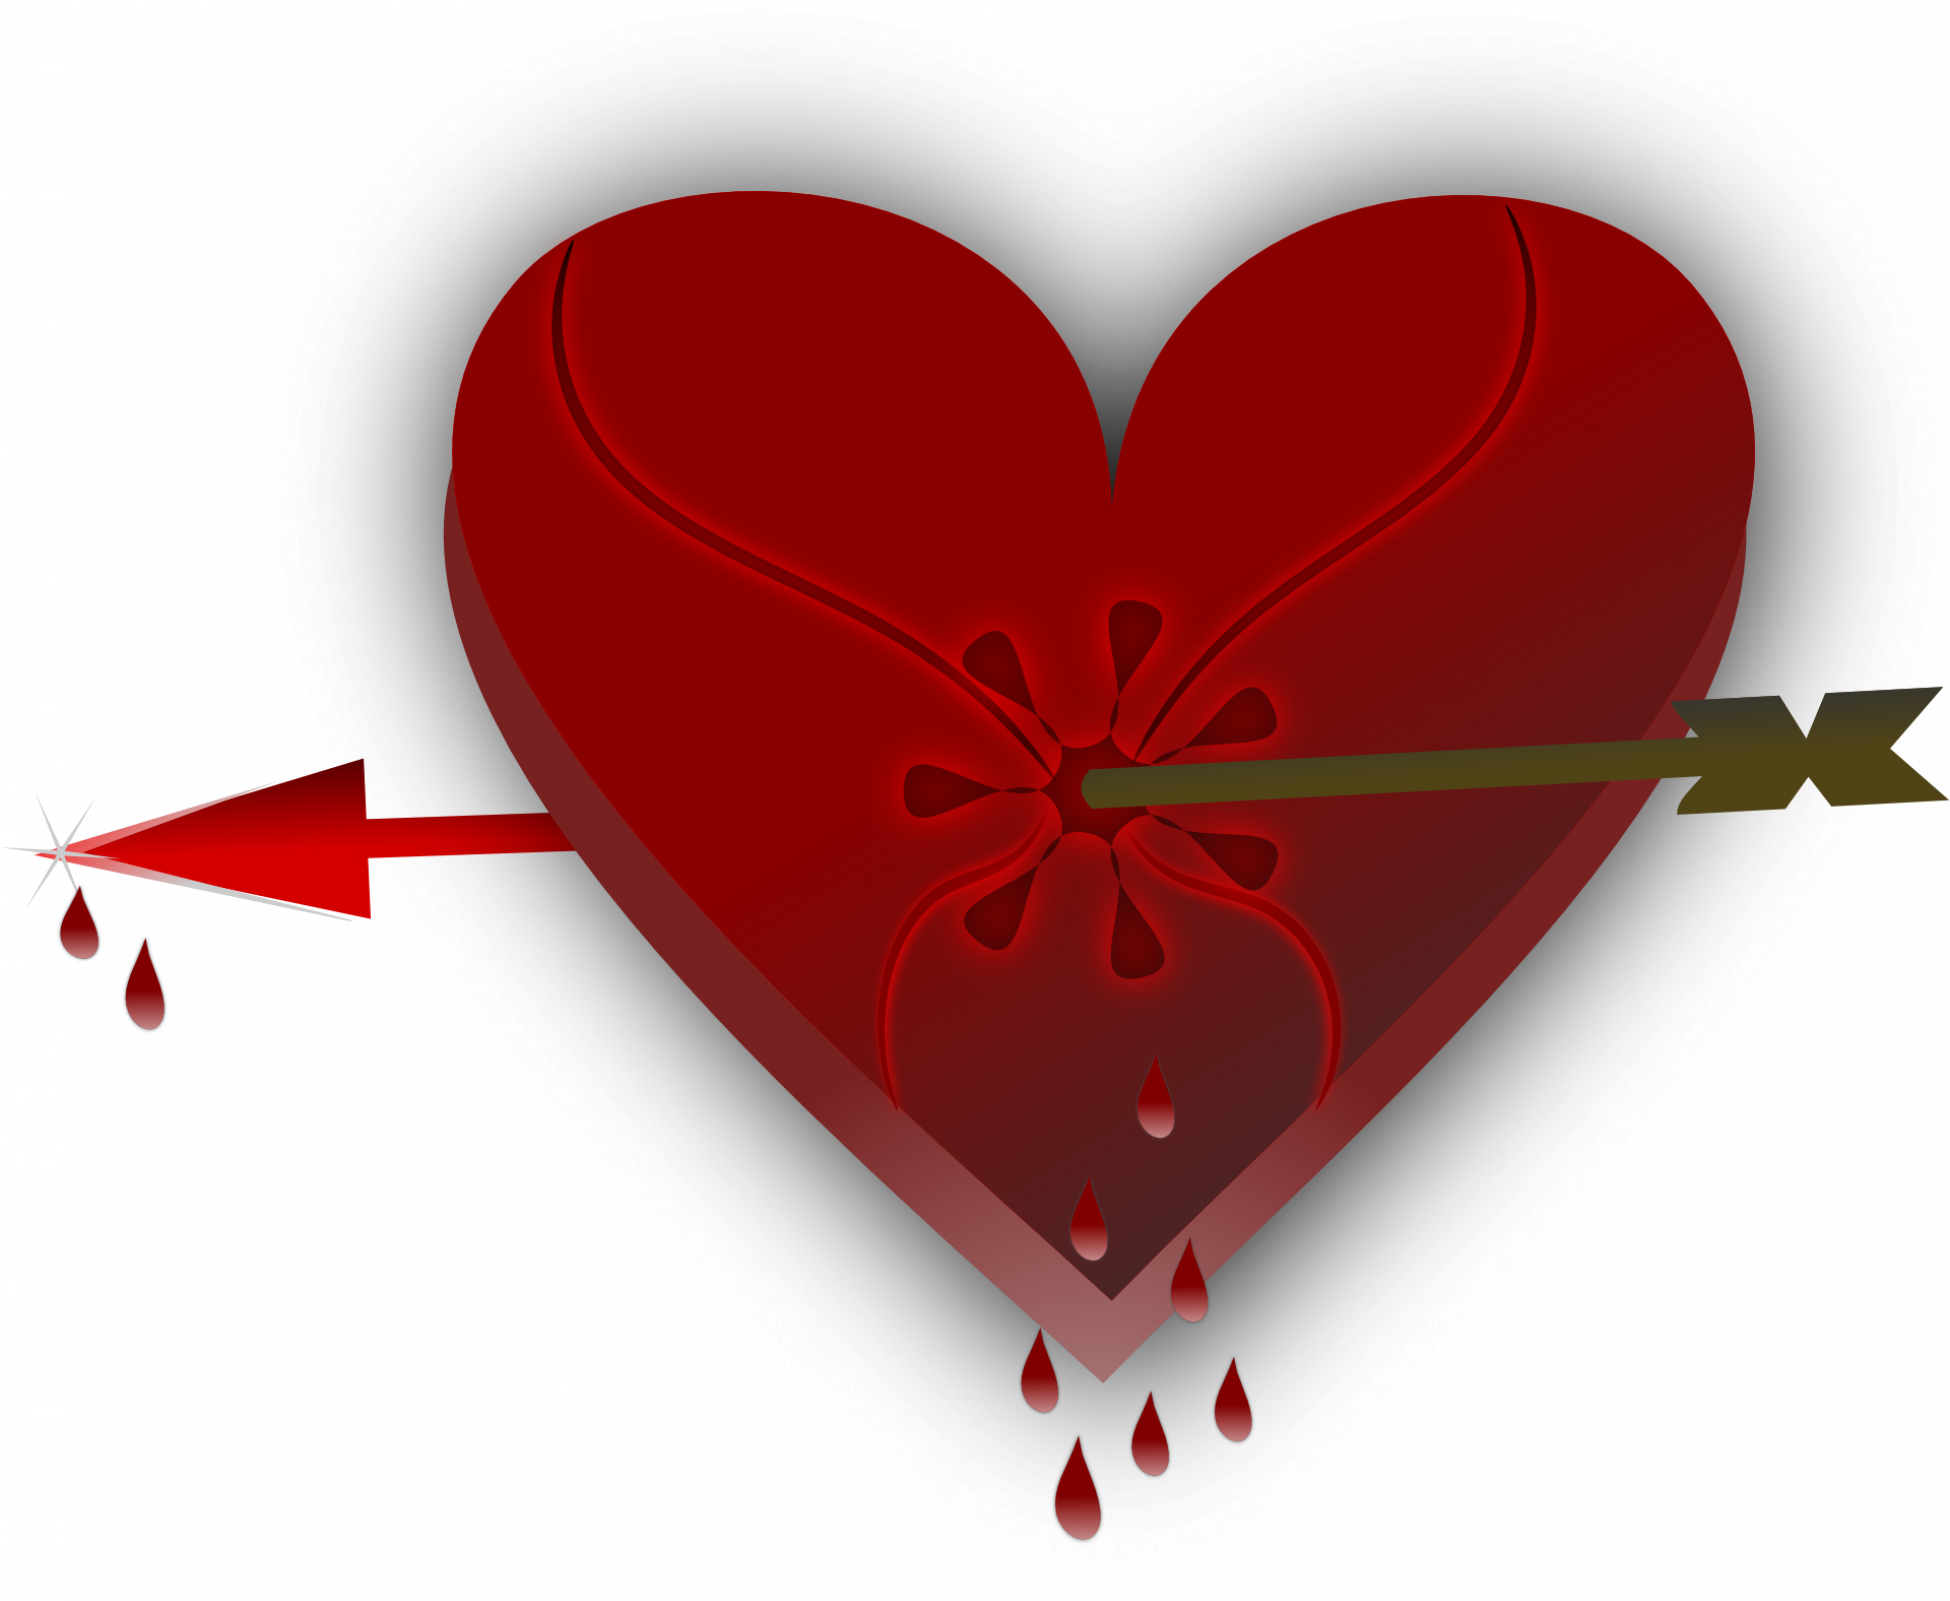 La science des coeurs brisés - Le chagrin d'amour: un choc pour l